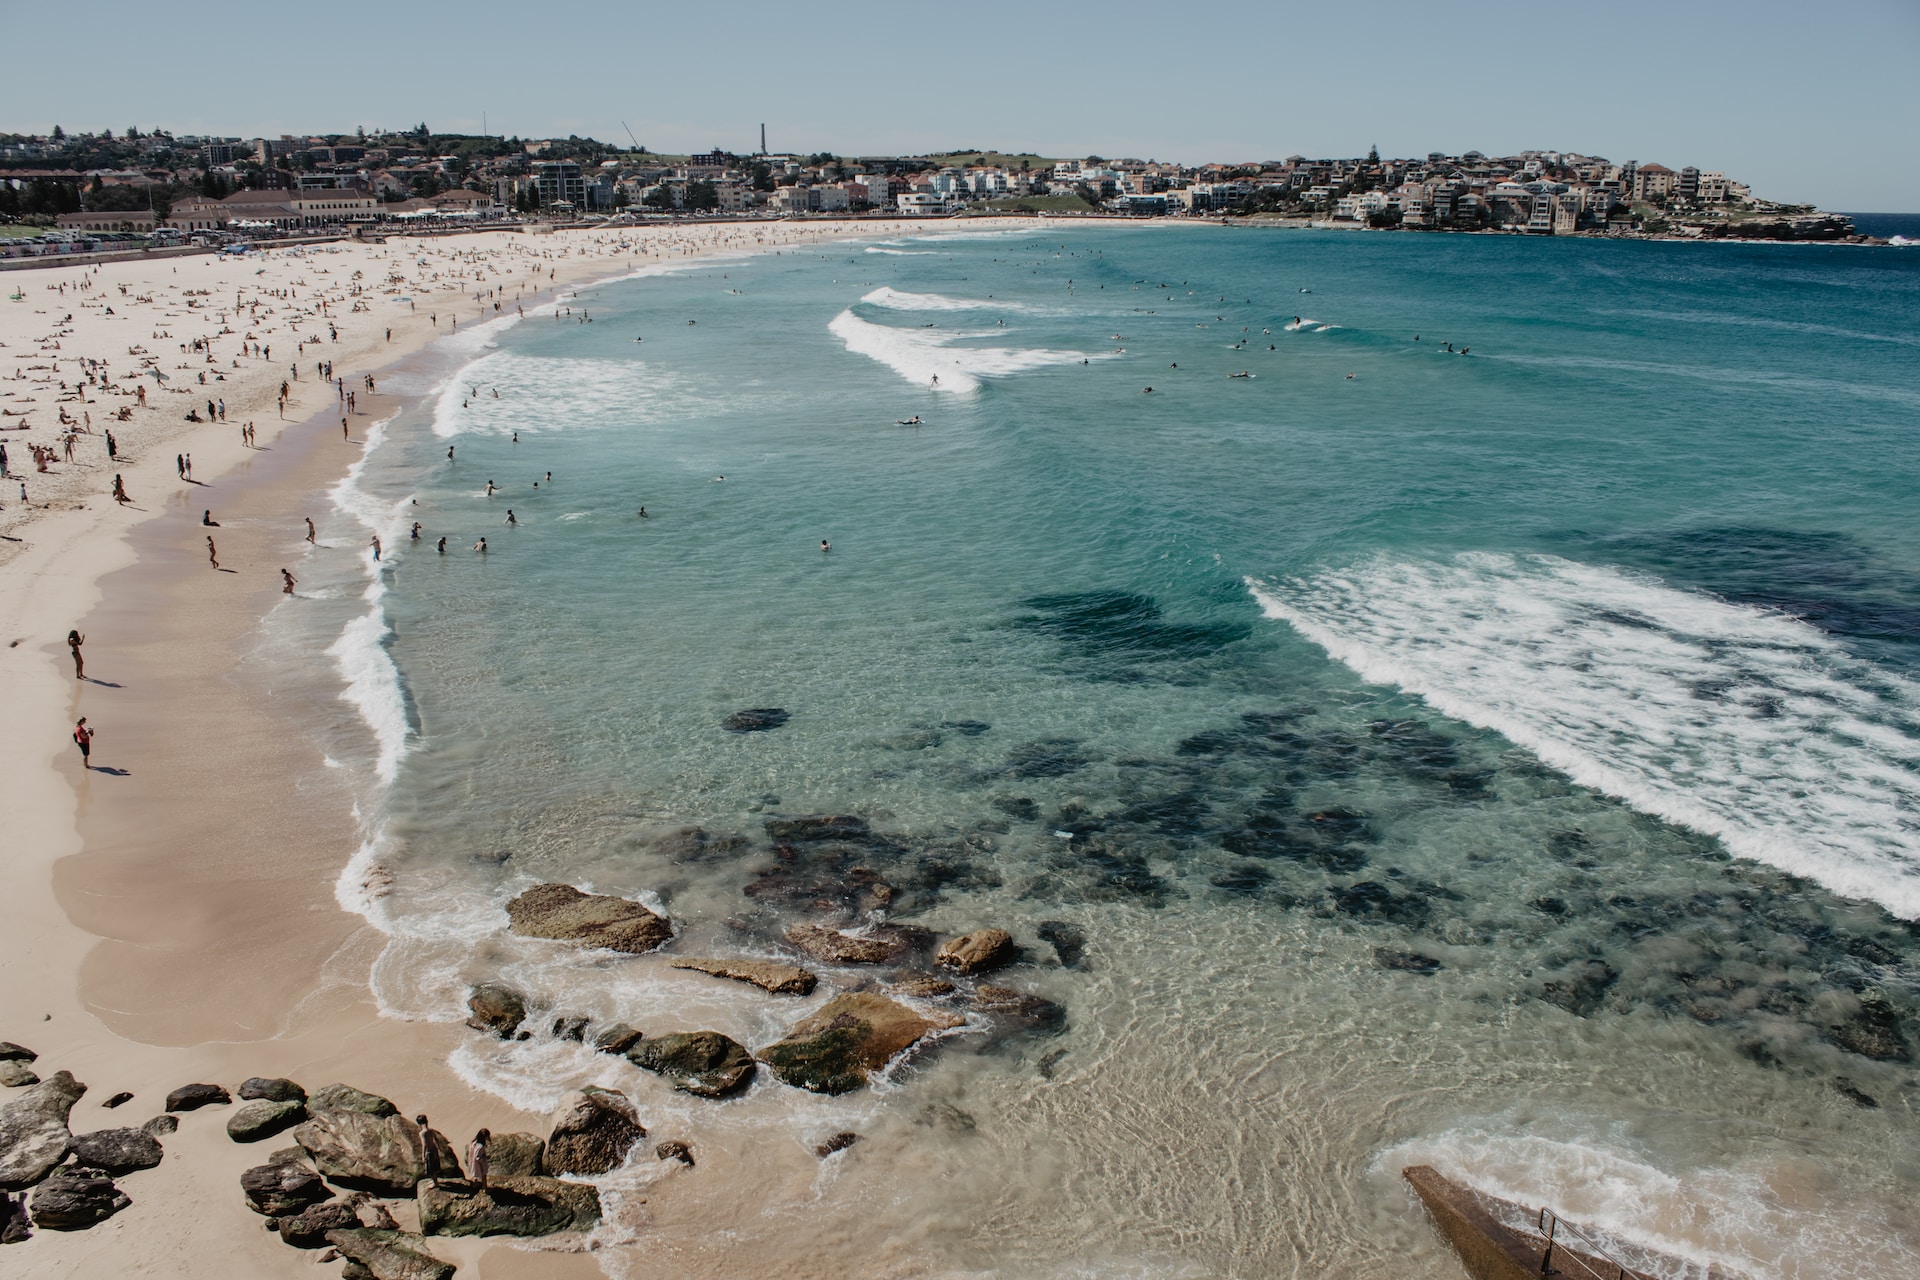 Bondi Beach - Sydney, Australia